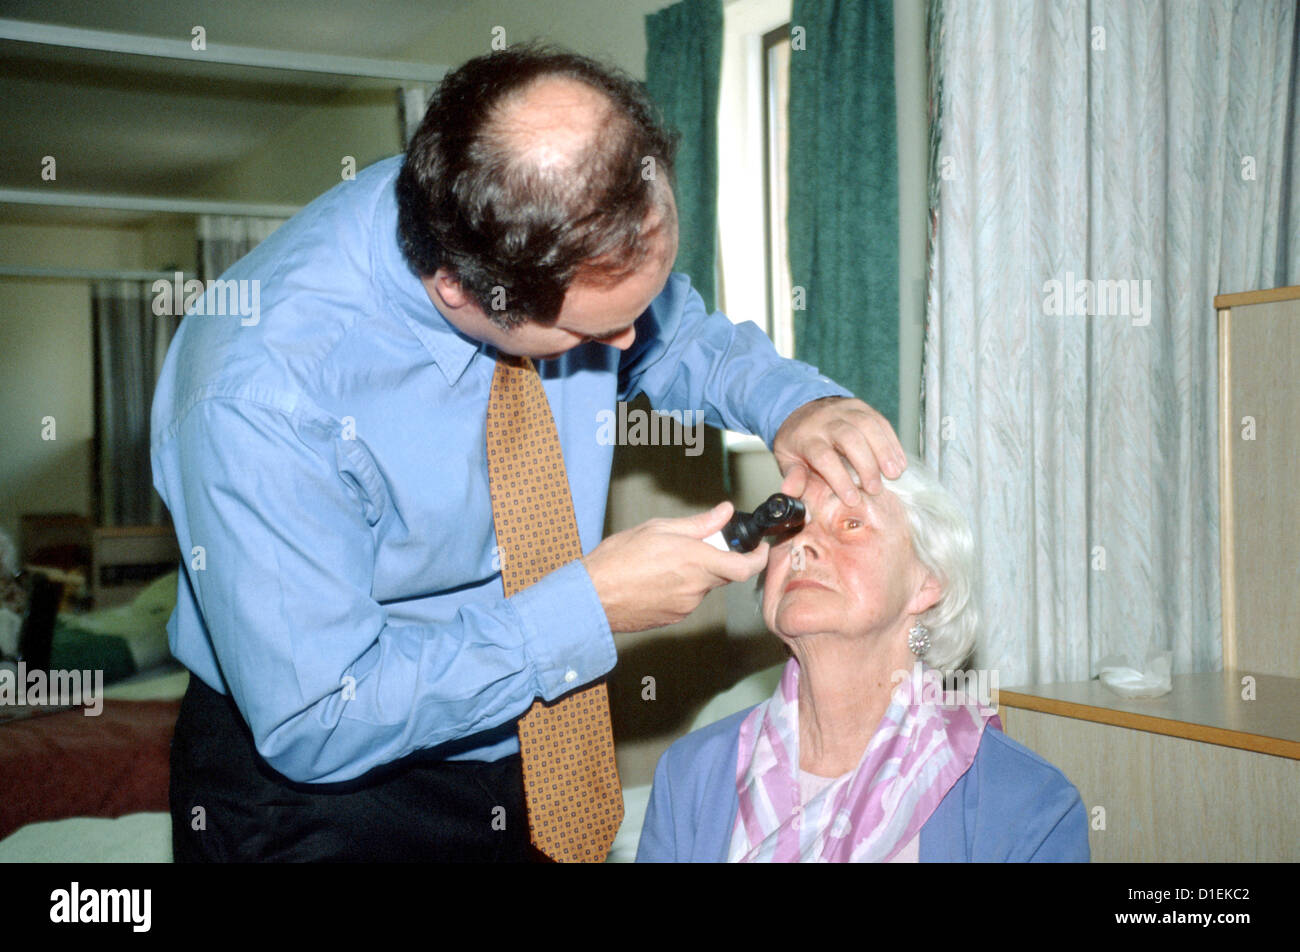 Un chirurgien consultant contrôle de l'œil d'un patient qui vient de subir une chirurgie de la cataracte. Banque D'Images